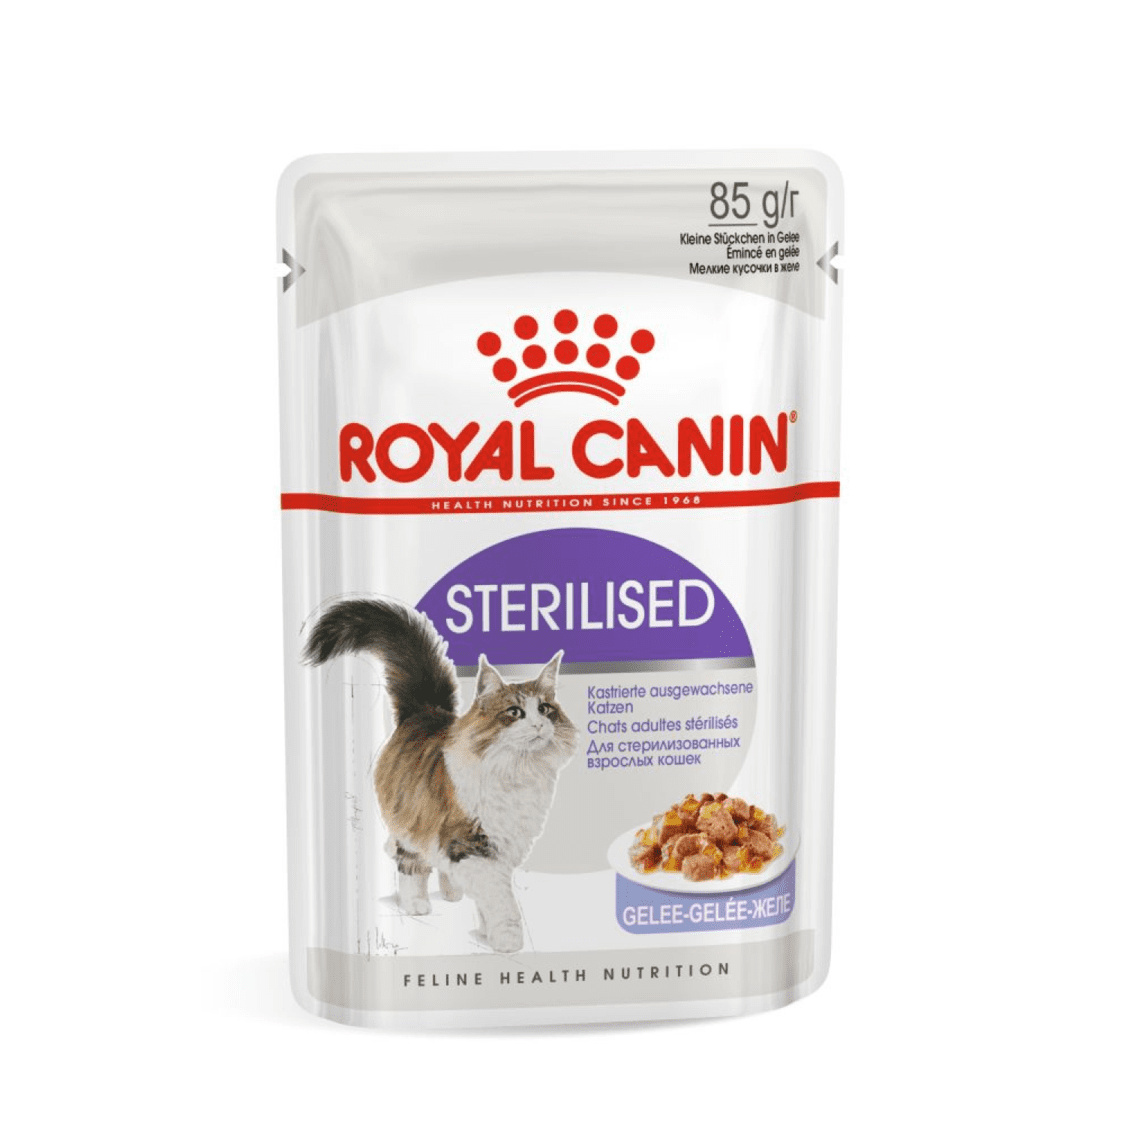 Royal Canin паучи Royal Canin паучи кусочки в желе для кастрированных кошек 1-7лет (28 шт.) royal canin паучи royal canin паучи кусочки в желе для котят 4 12 месяцев 85 г